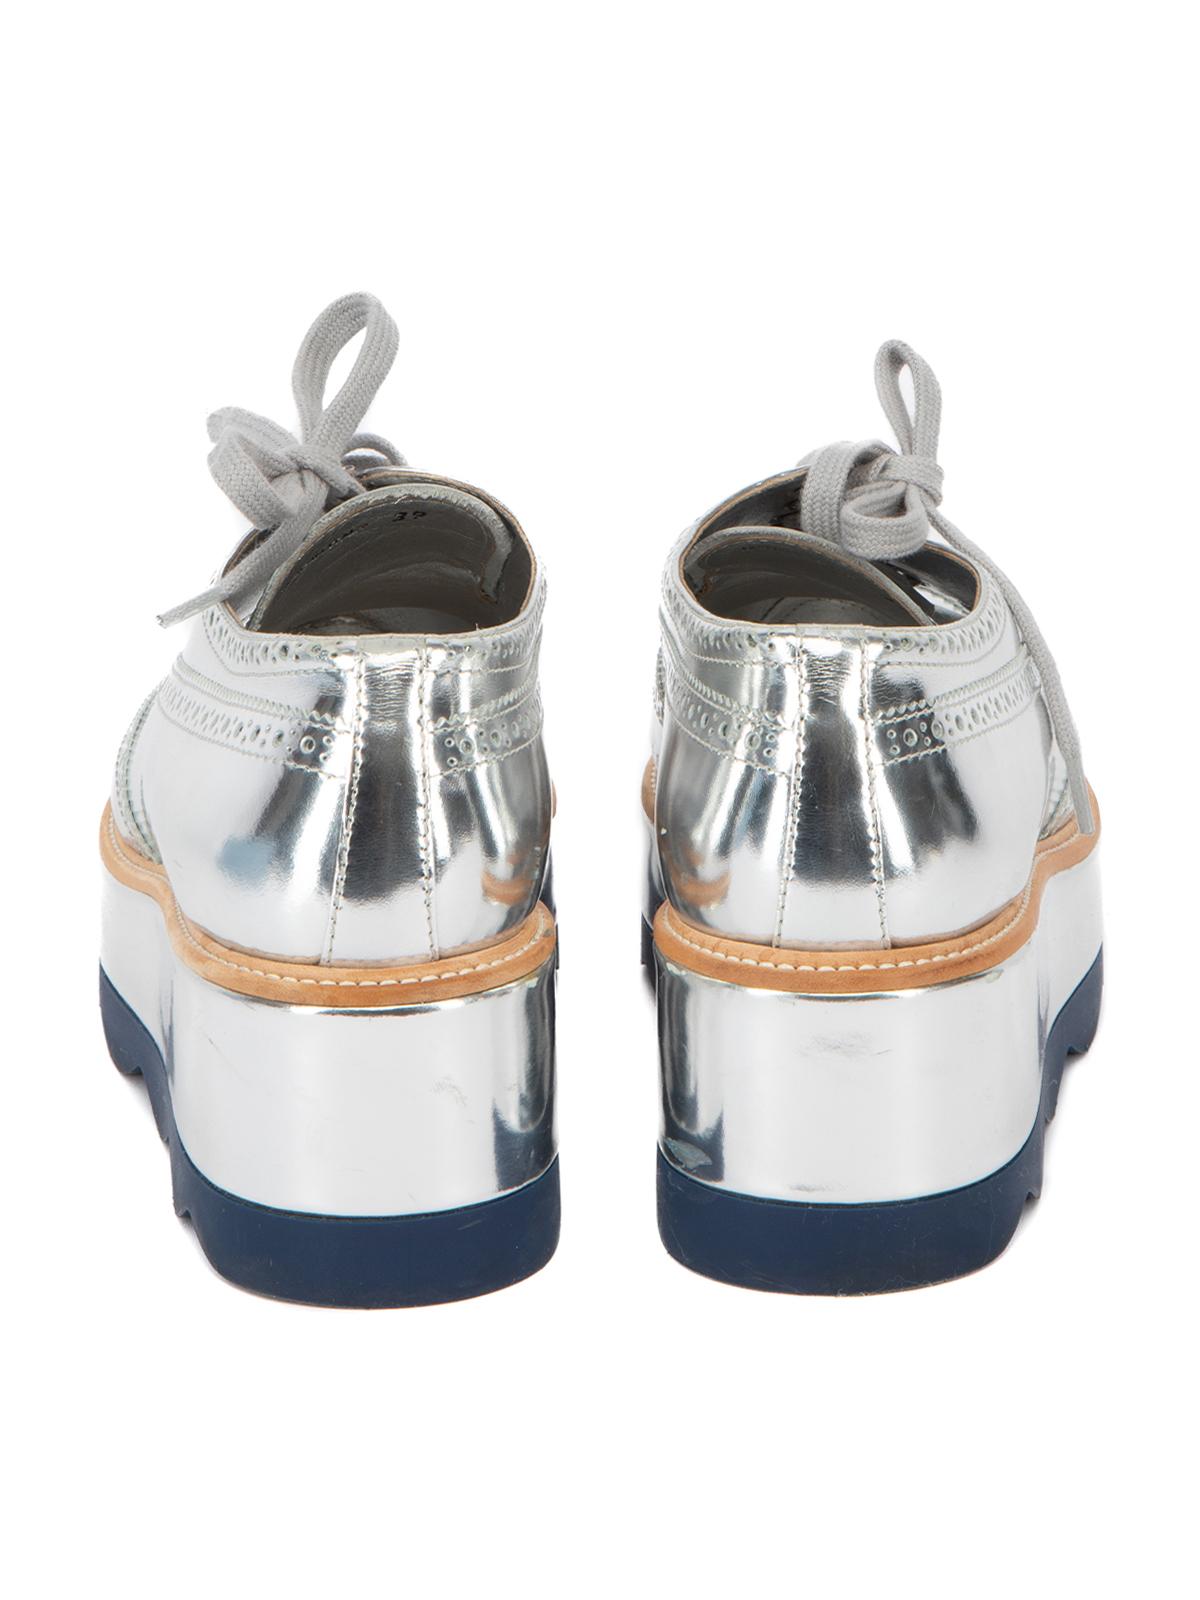 prada white platform shoes